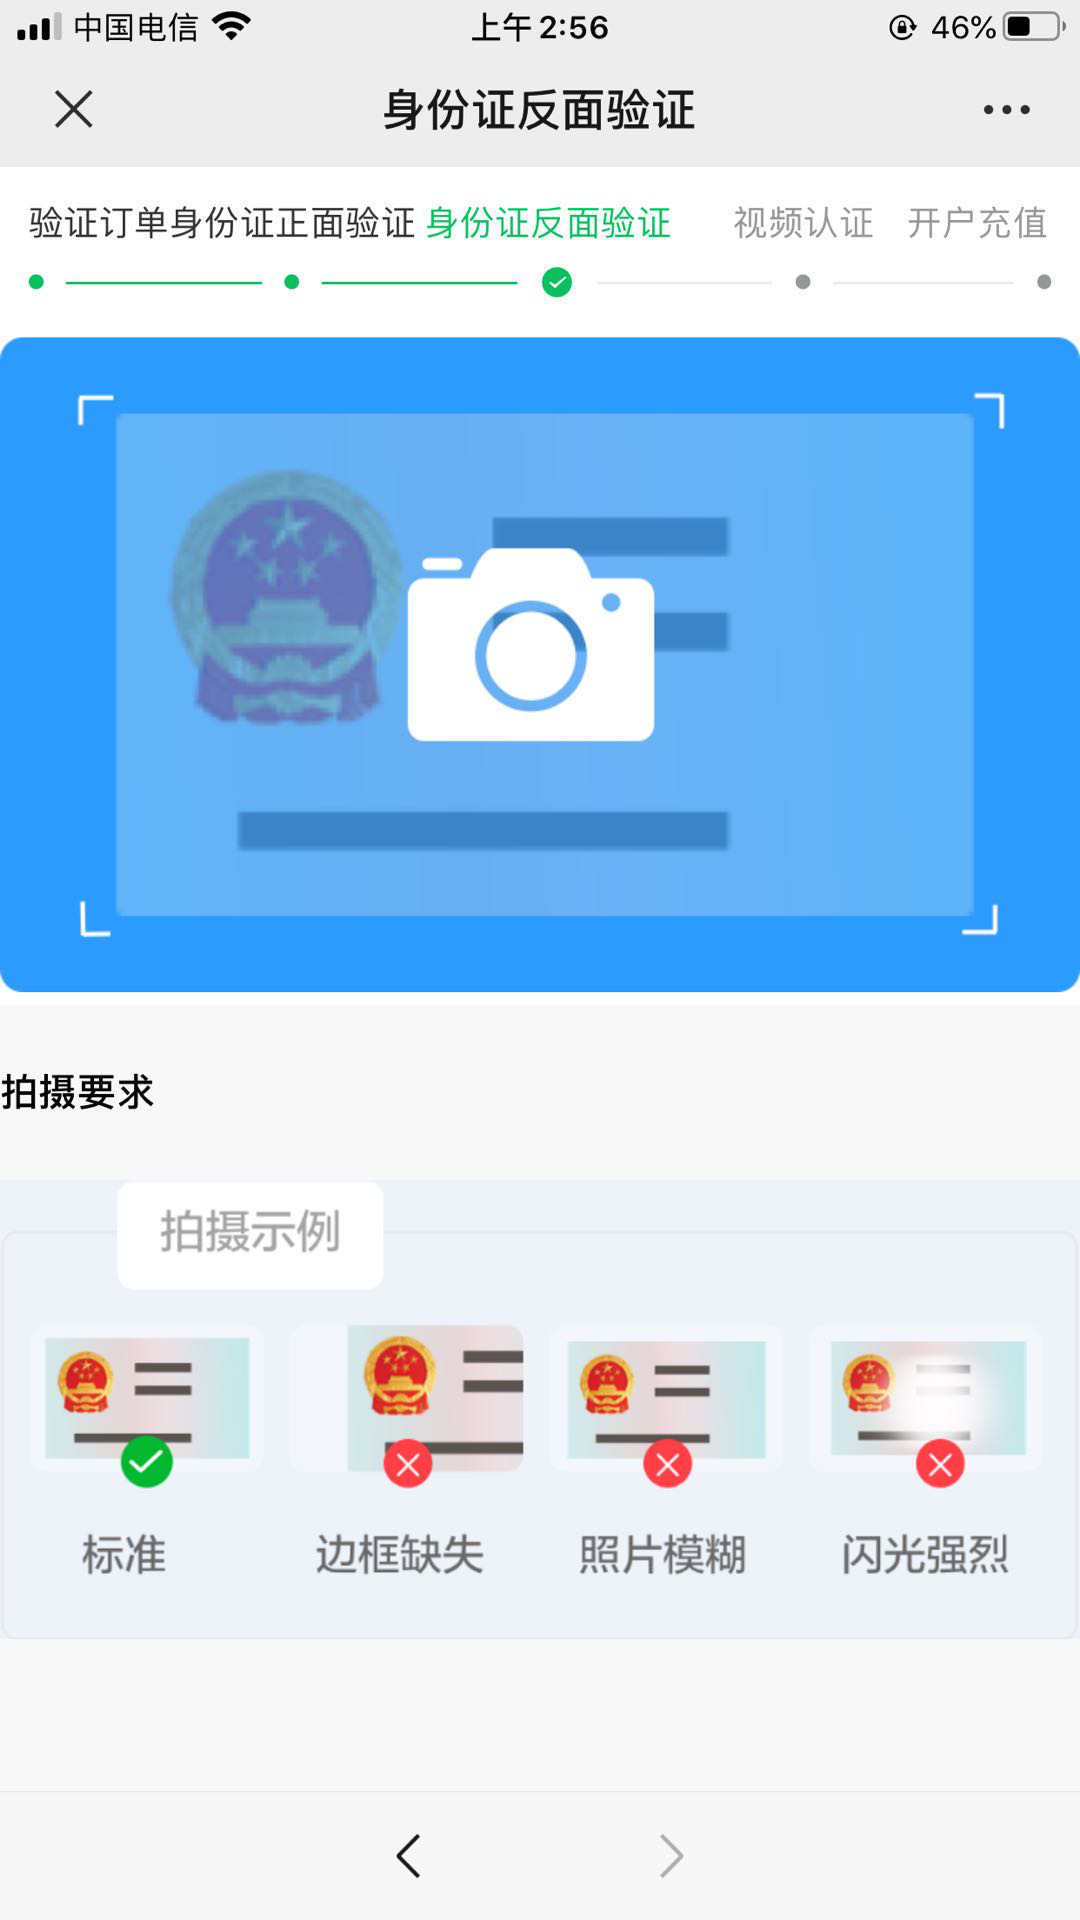 连连科技微信视频激活步骤——浦江通讯